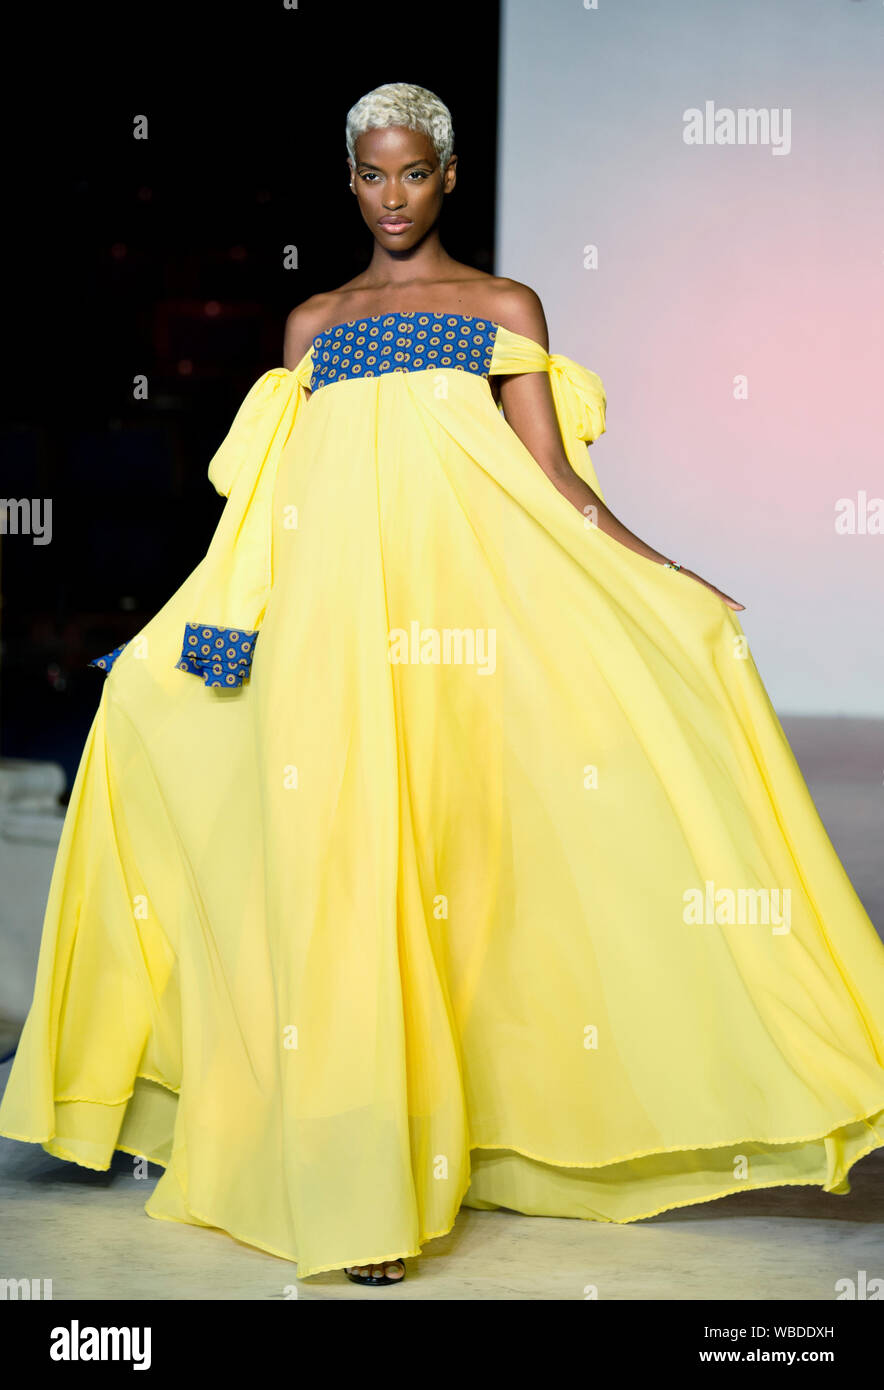 Afrika Fashion Show London 2019. Gewähltes Bild vom Start- und Landebahn erscheinen Designer Trends & brillante Ausdrucke. Stockfoto